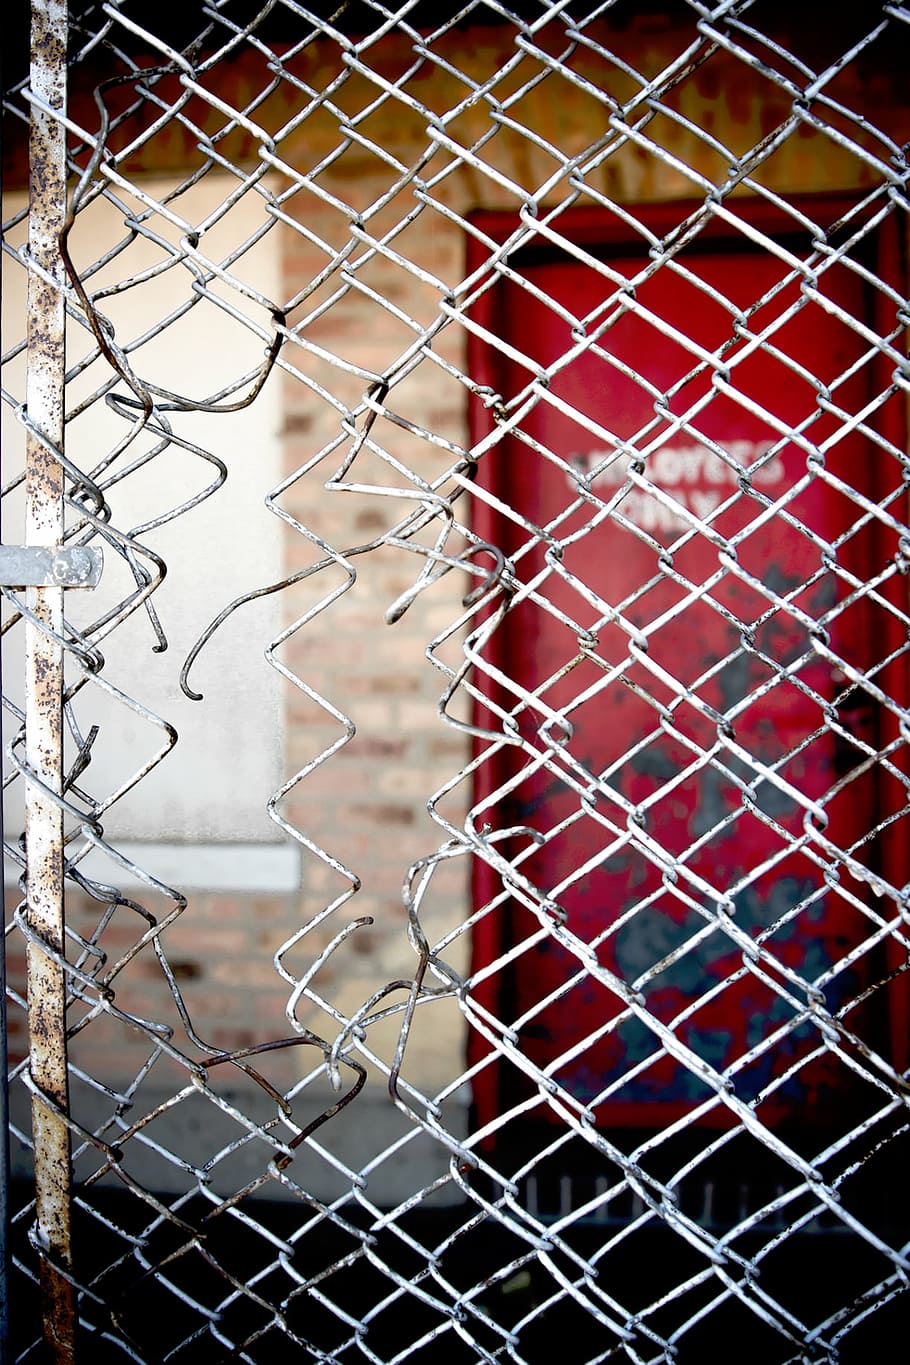 macro shot photography, fence, chicken, wire, door, red, sign, grid, steel, metal